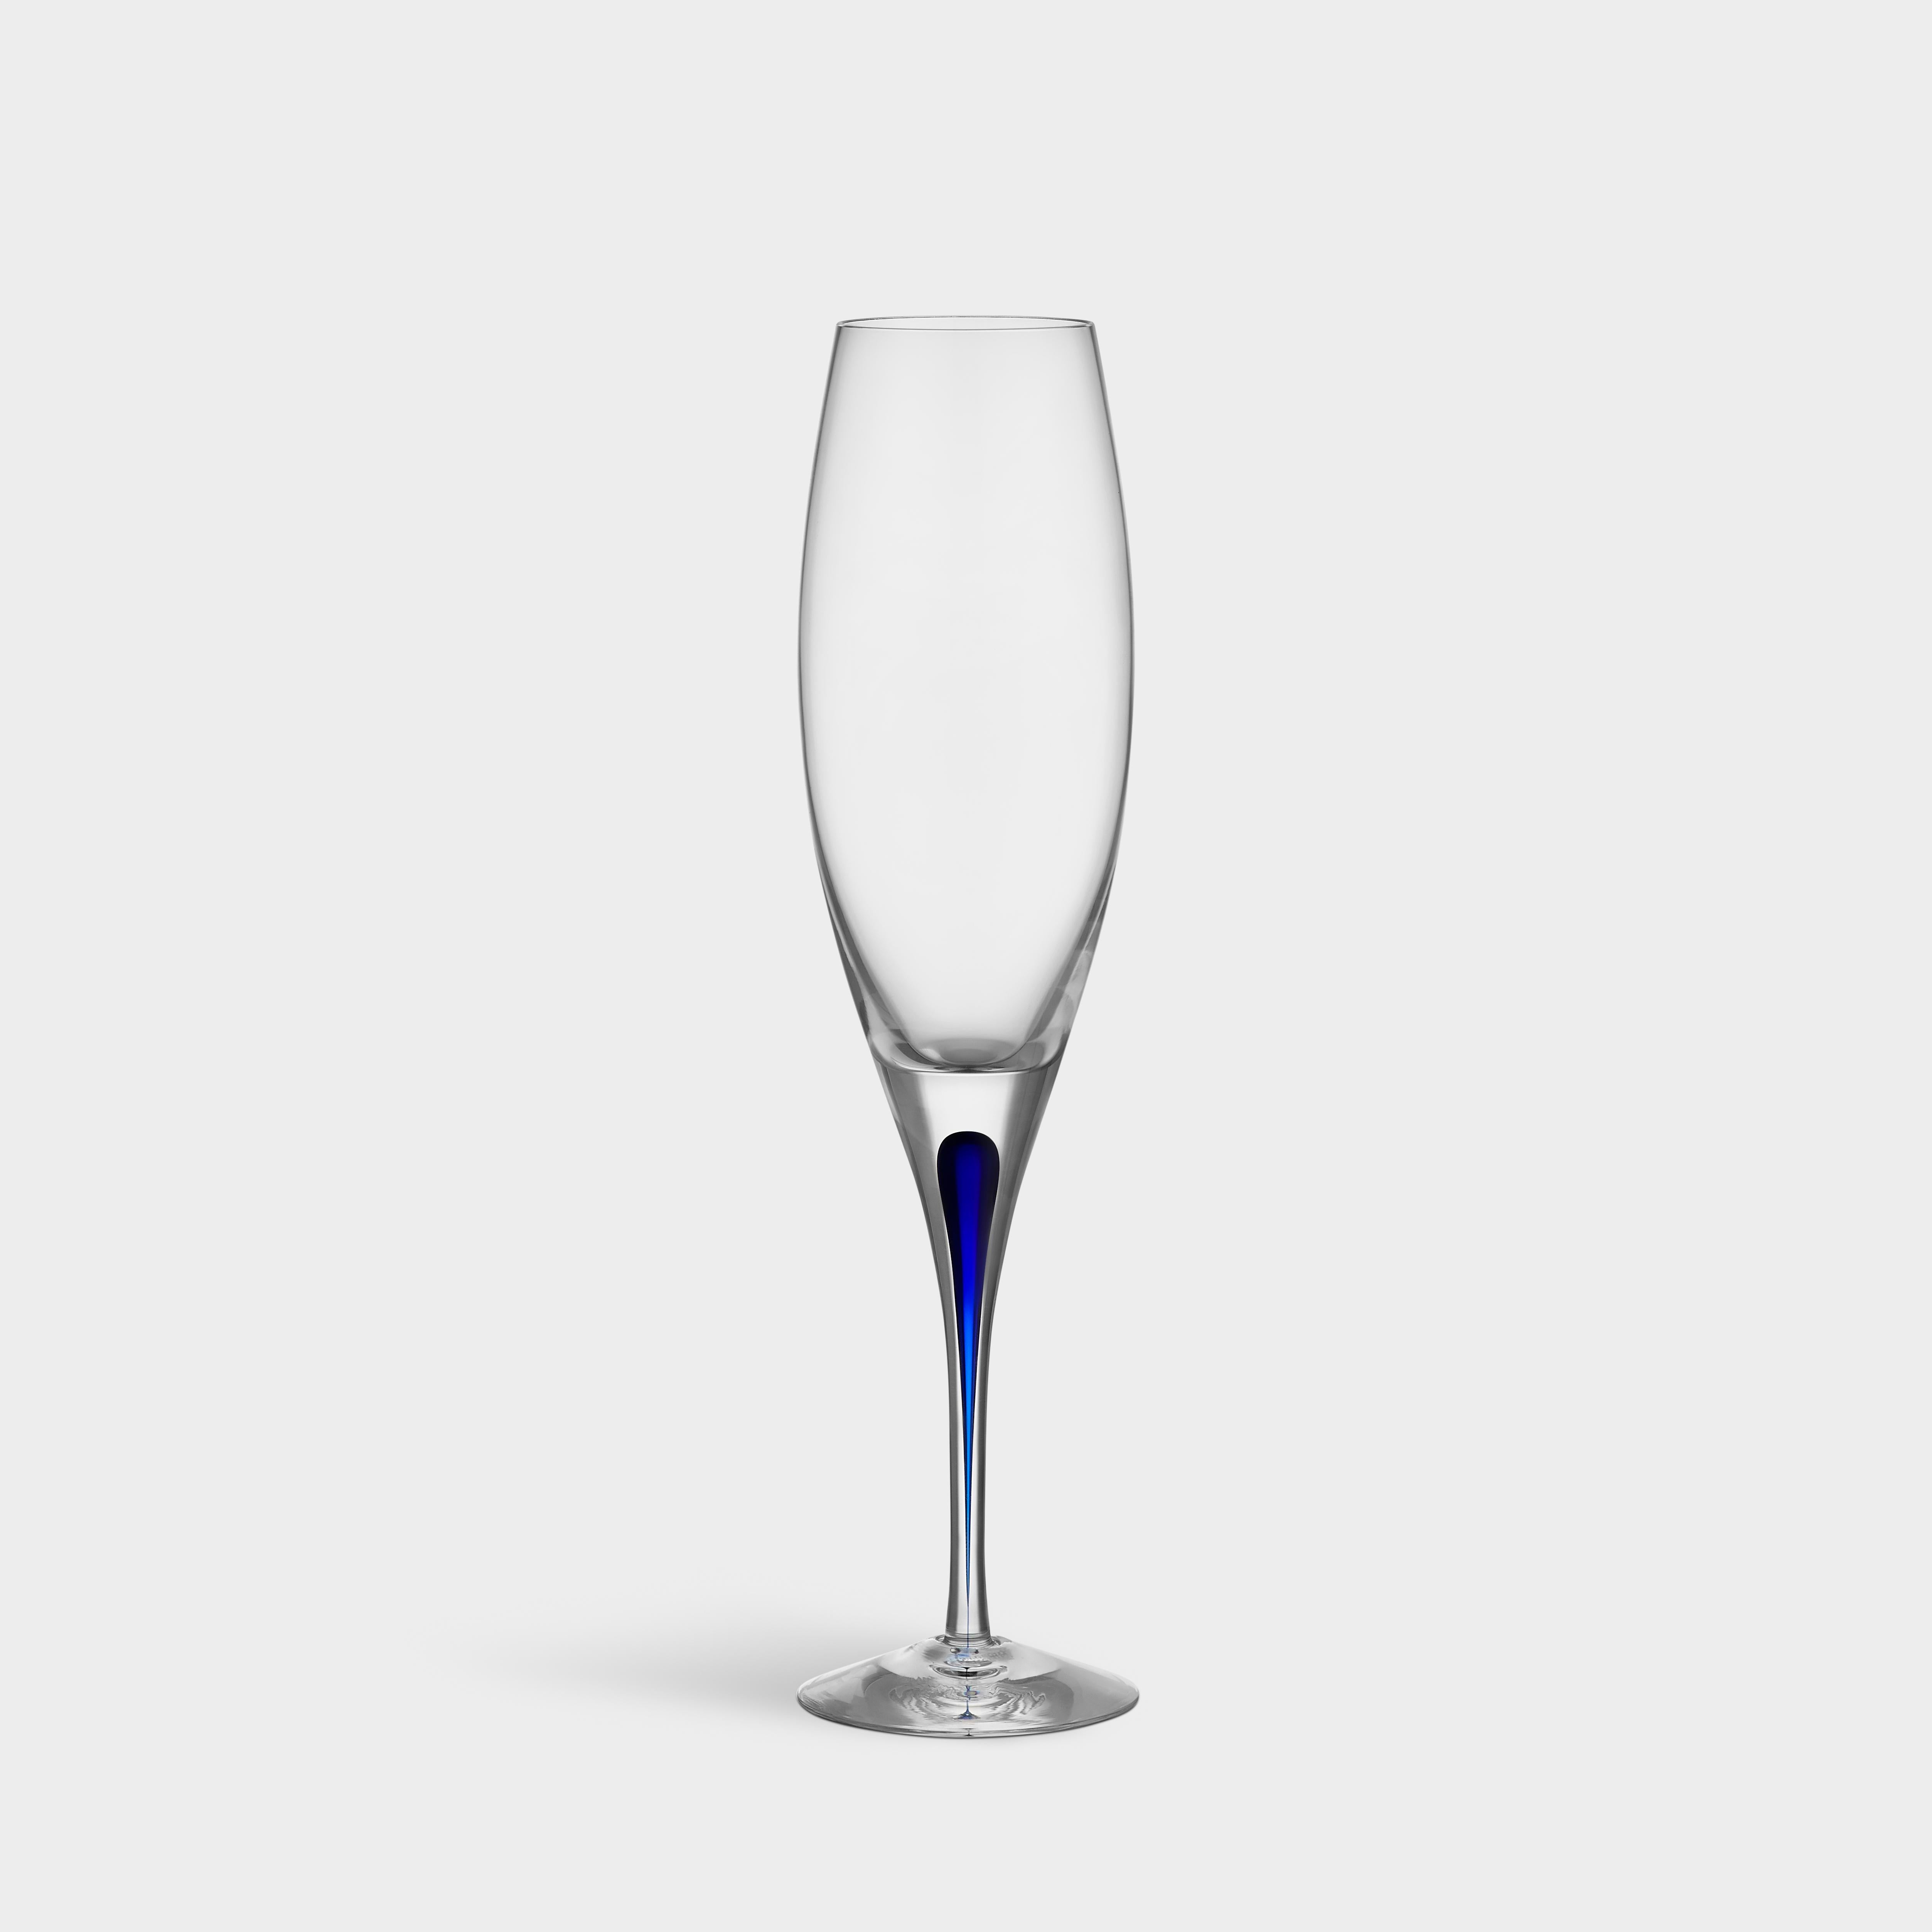 Intermezzo Flute von Orrefors wurde 1984 entworfen. Das Glas mit einem Fassungsvermögen von 7 oz eignet sich für kohlensäurehaltige Getränke, wie z. B. Champagner, da die hohe, schlanke Schale die Bläschen im Getränk bewahrt. Intermezzo Flute wird